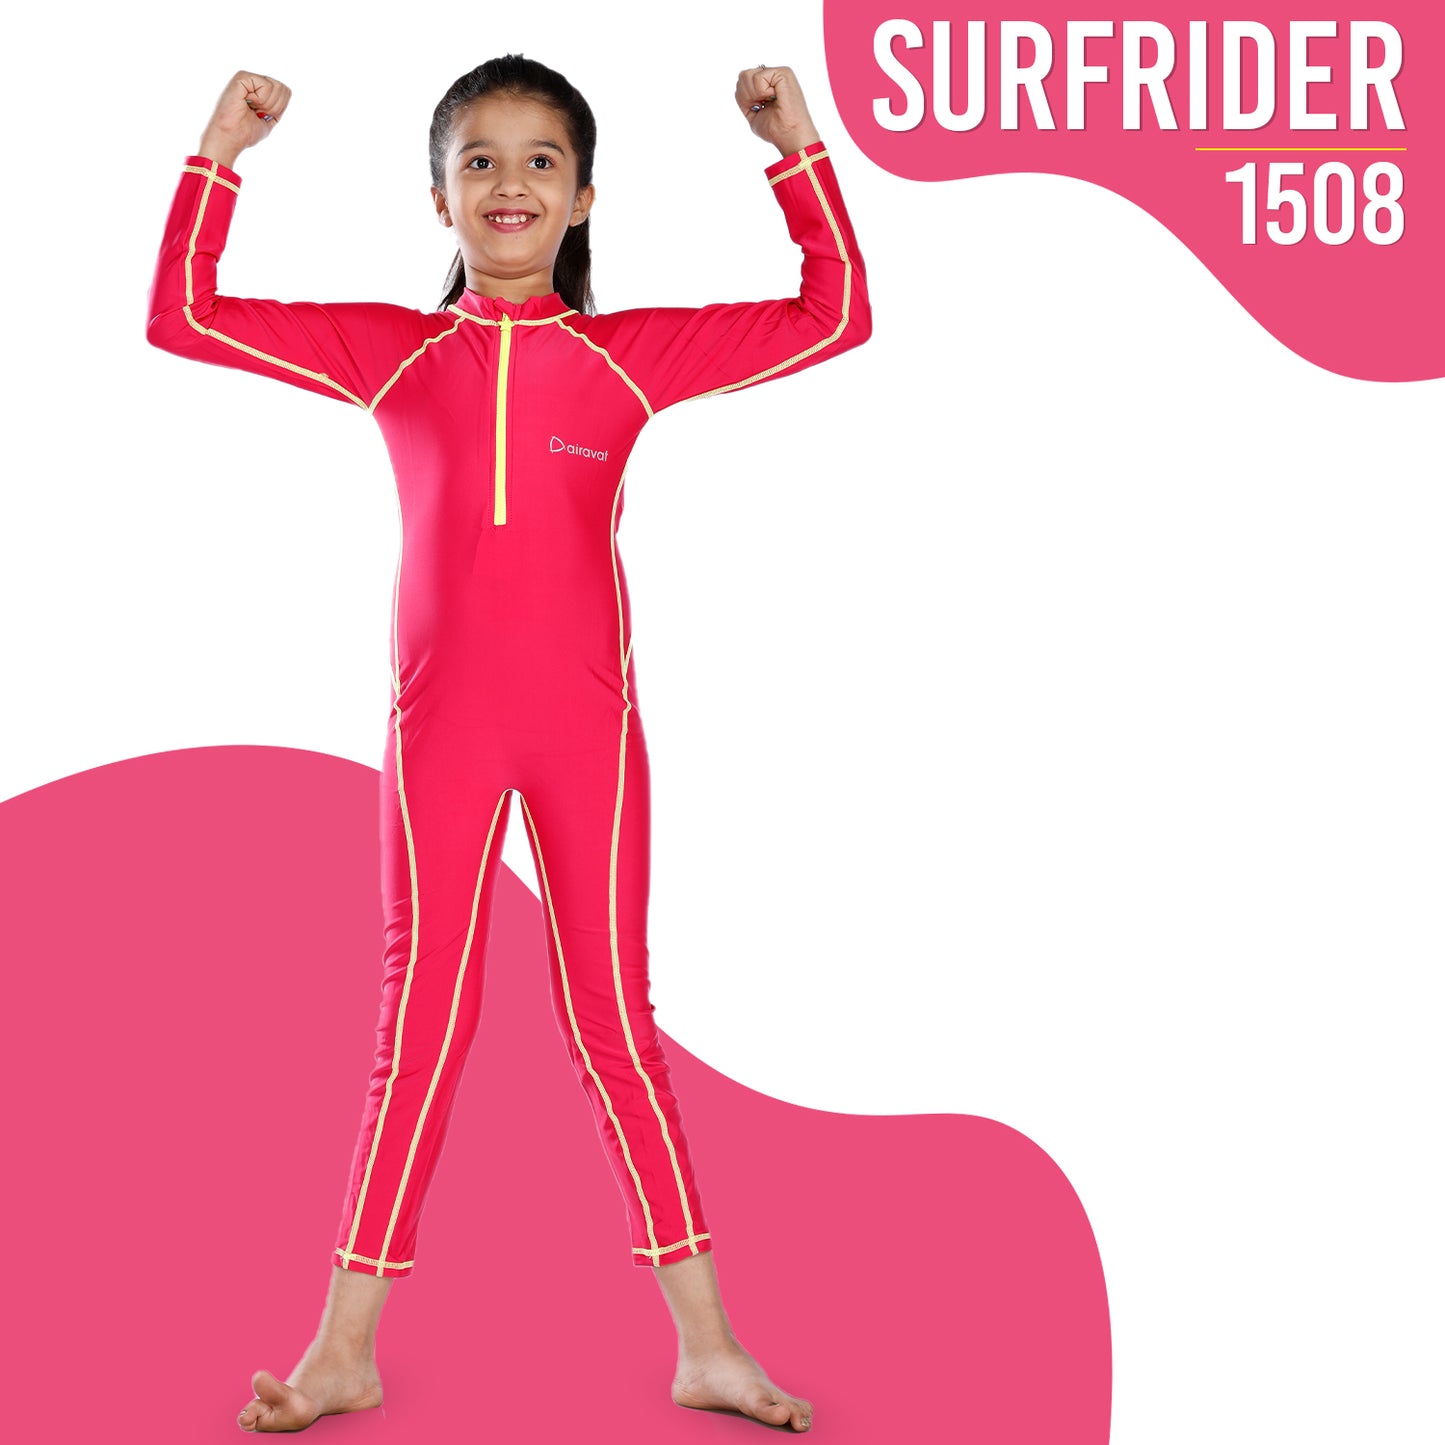 SURFRIDER 1508 (FULL BODY)